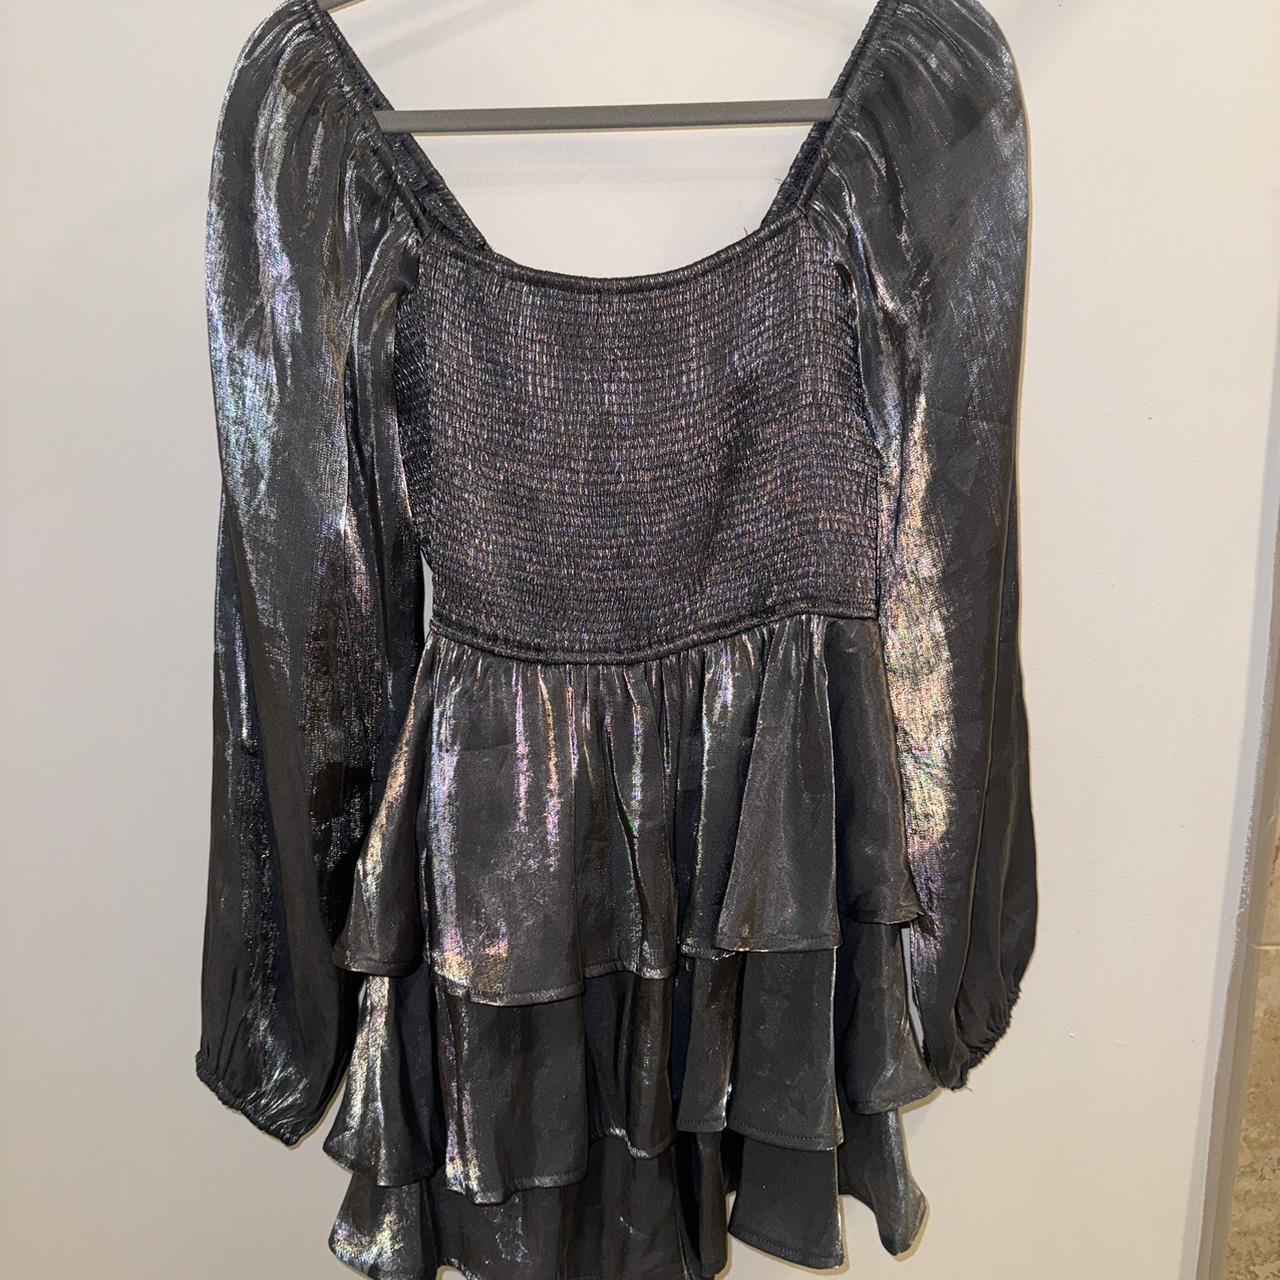 Metallic silver romper dress (L but fits M/L) worn... - Depop